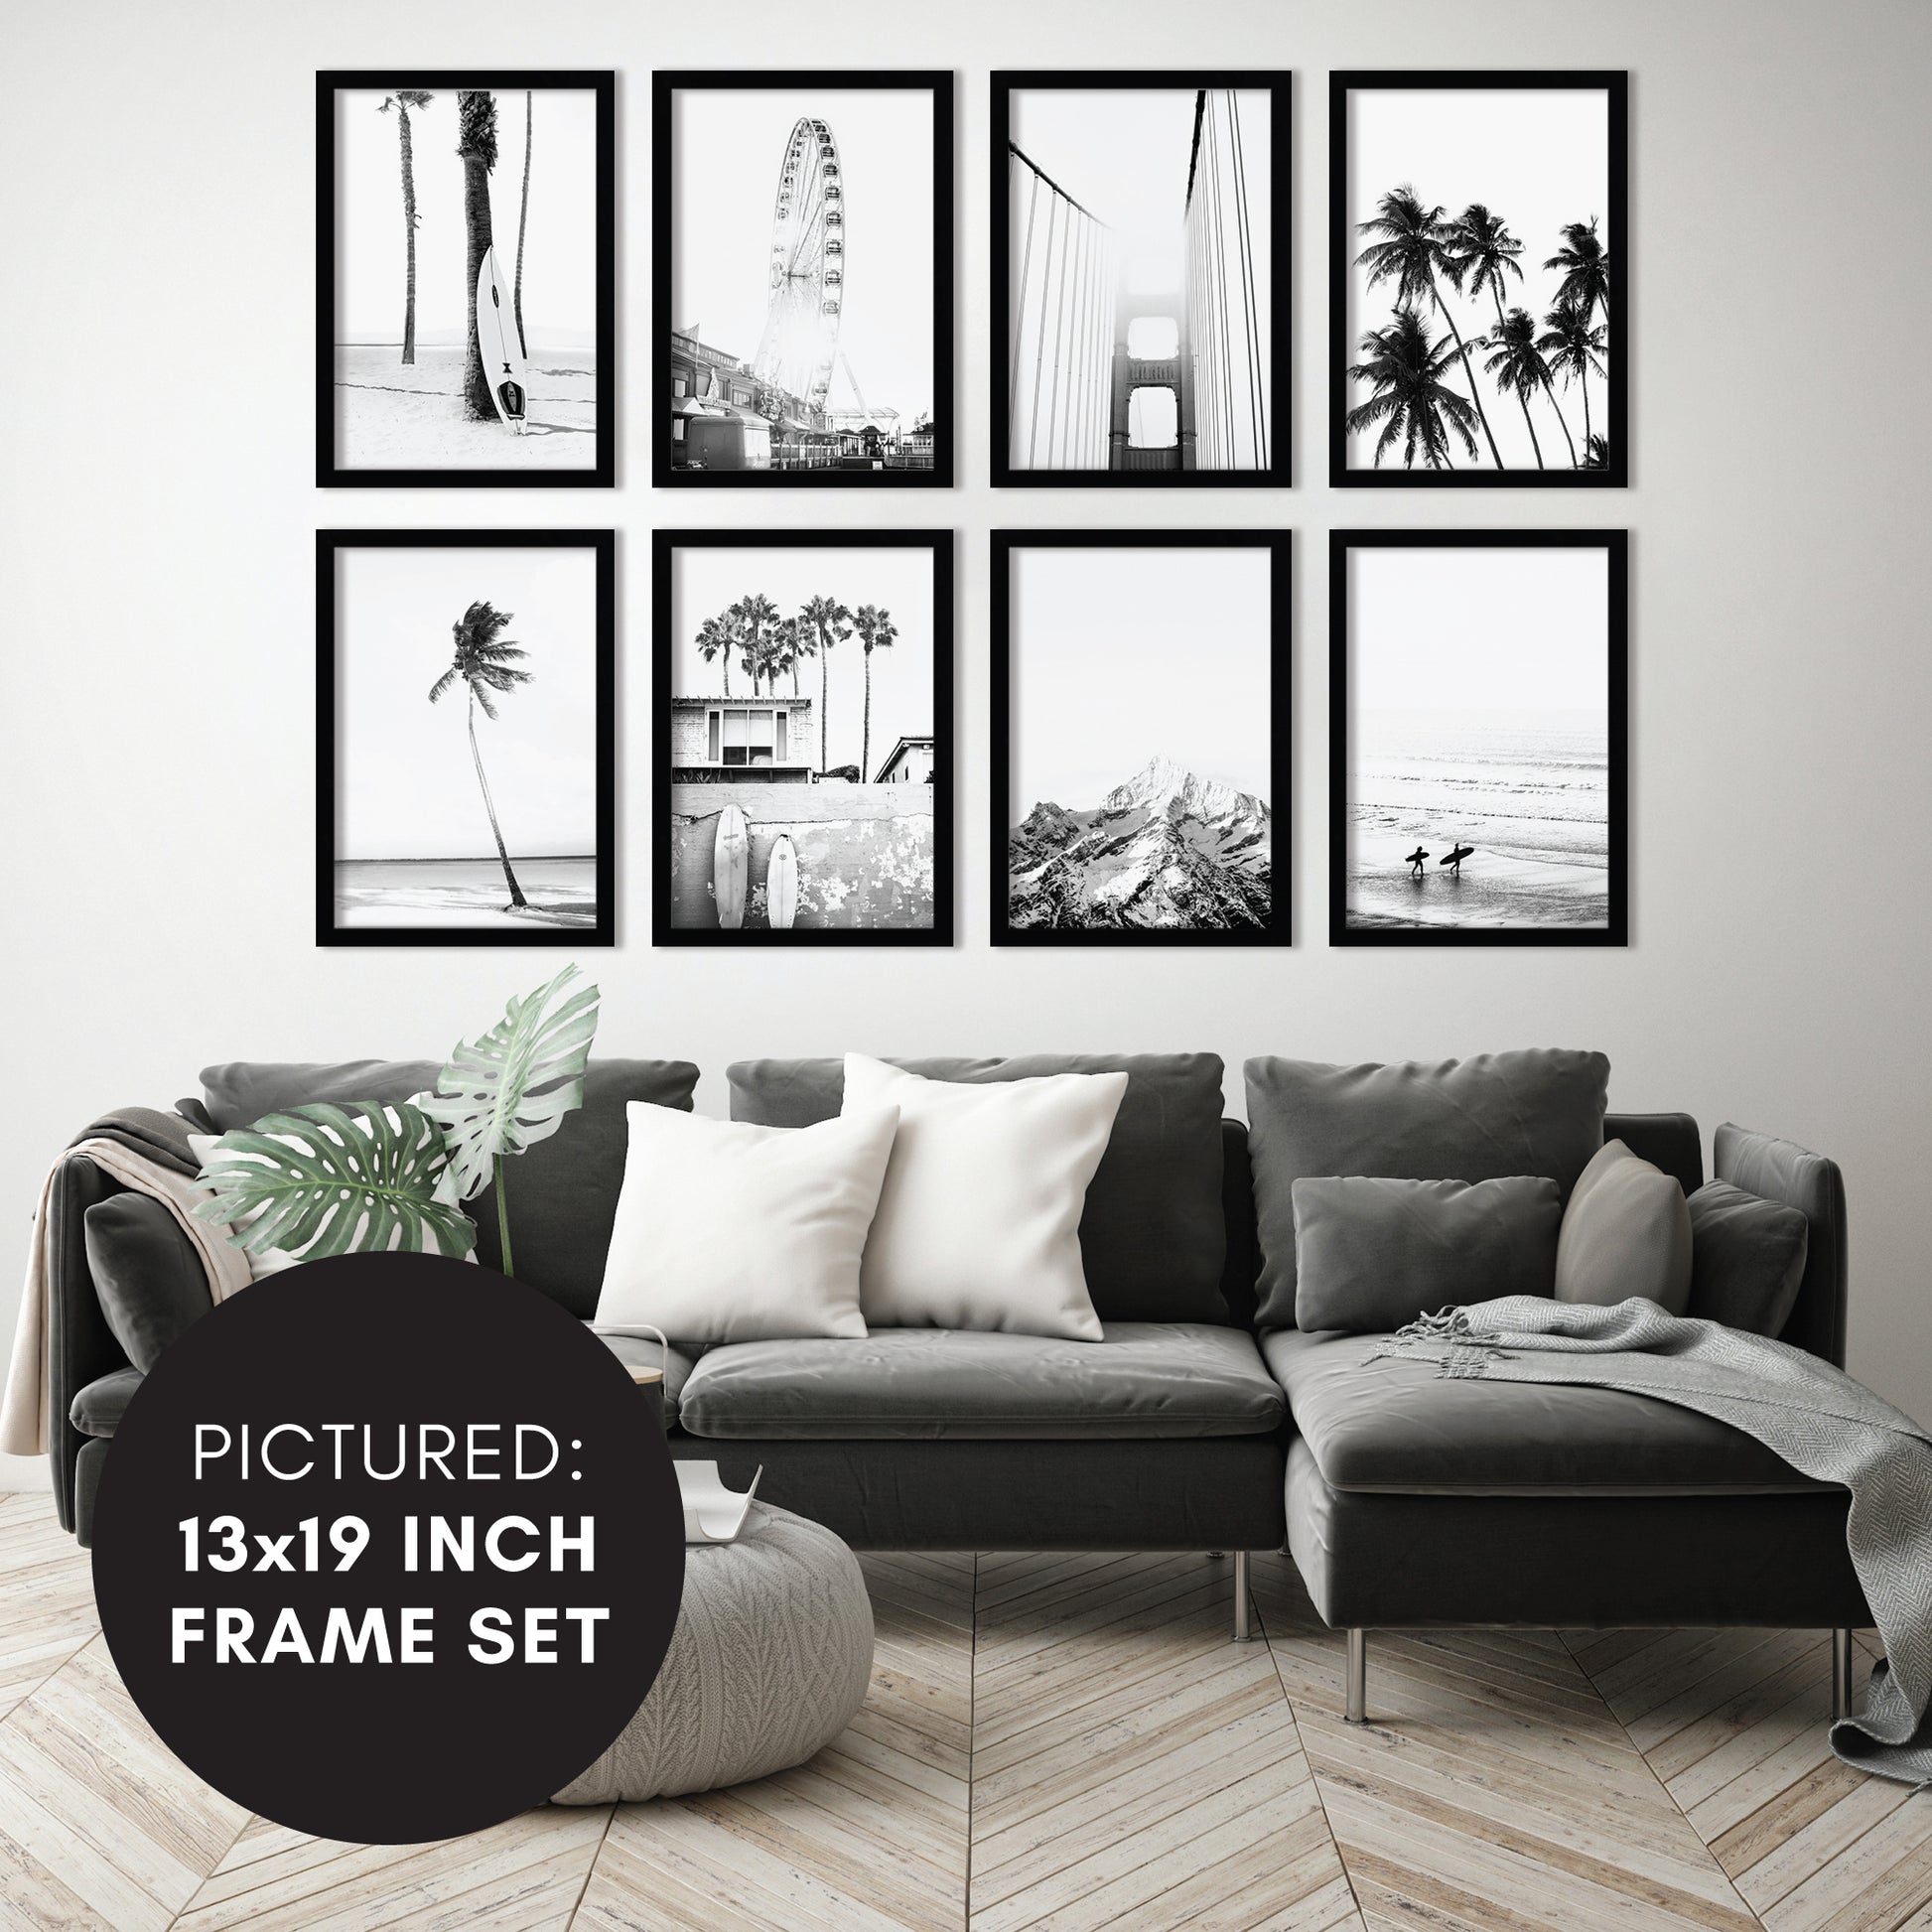 11 Black & White Frames ideas  black and white frames, frames on